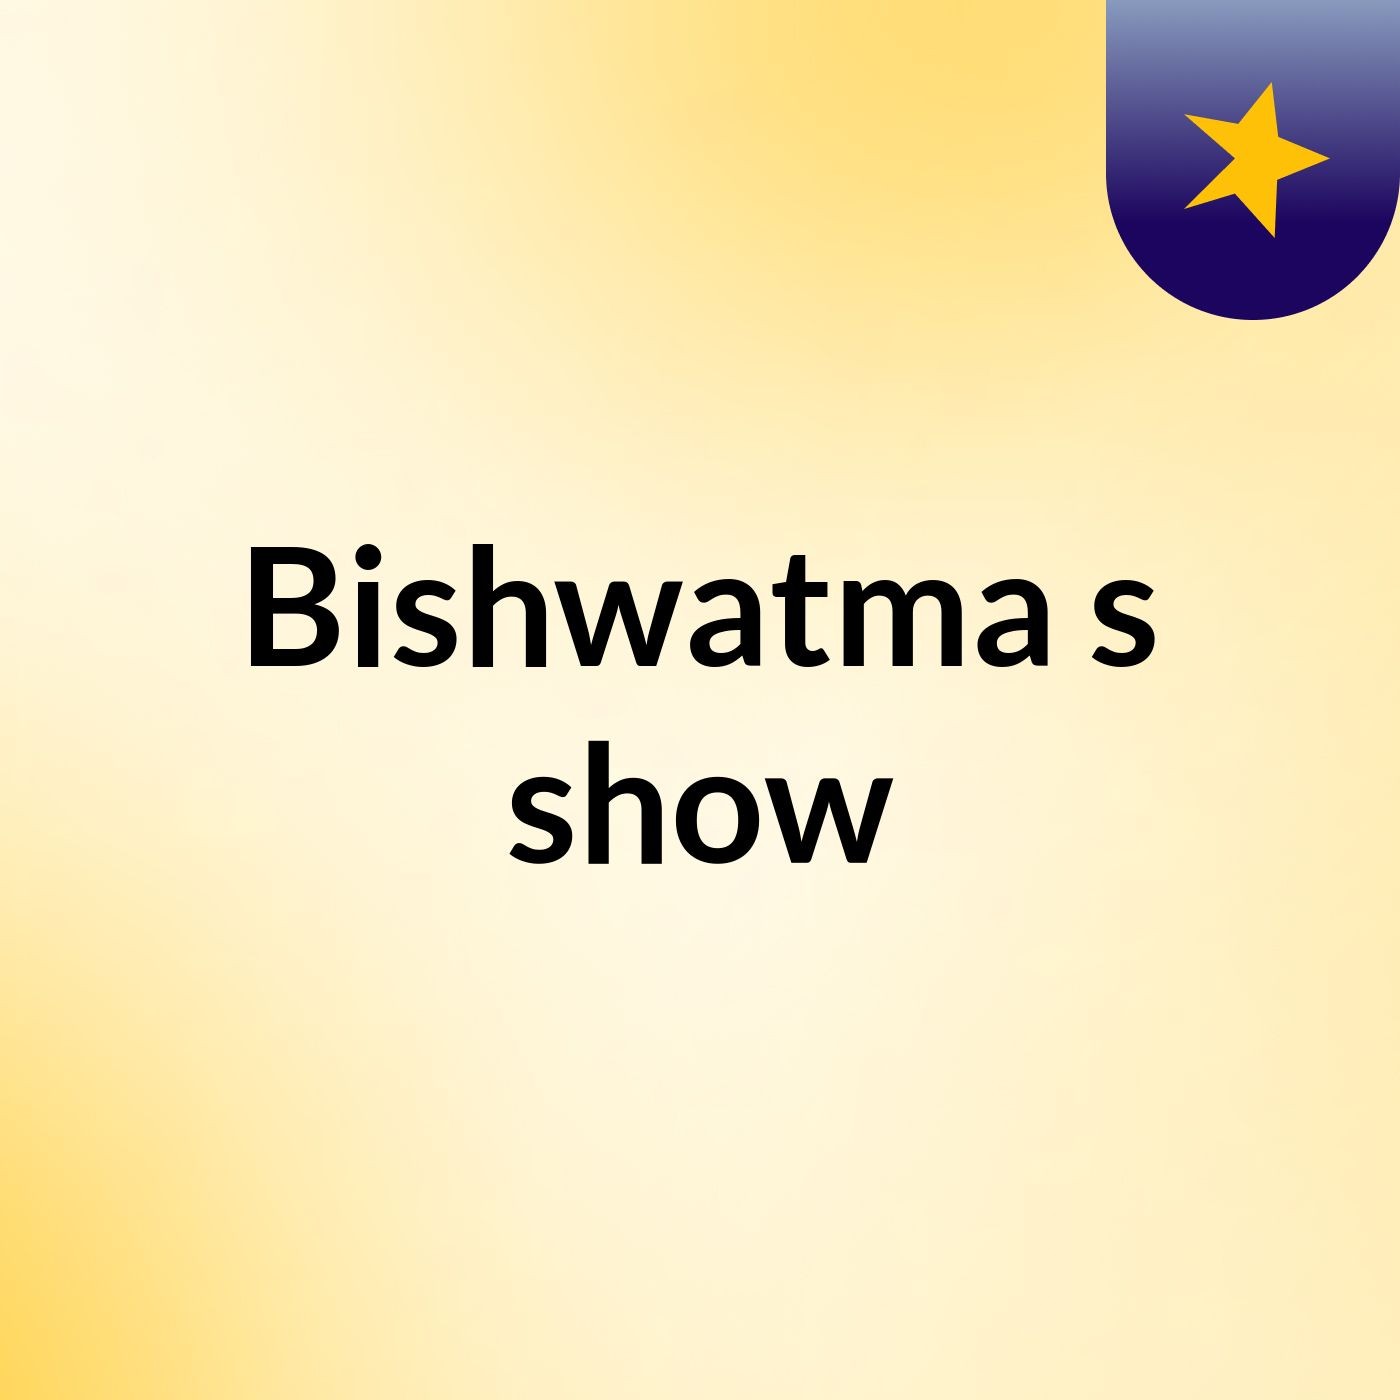 Bishwatma's show